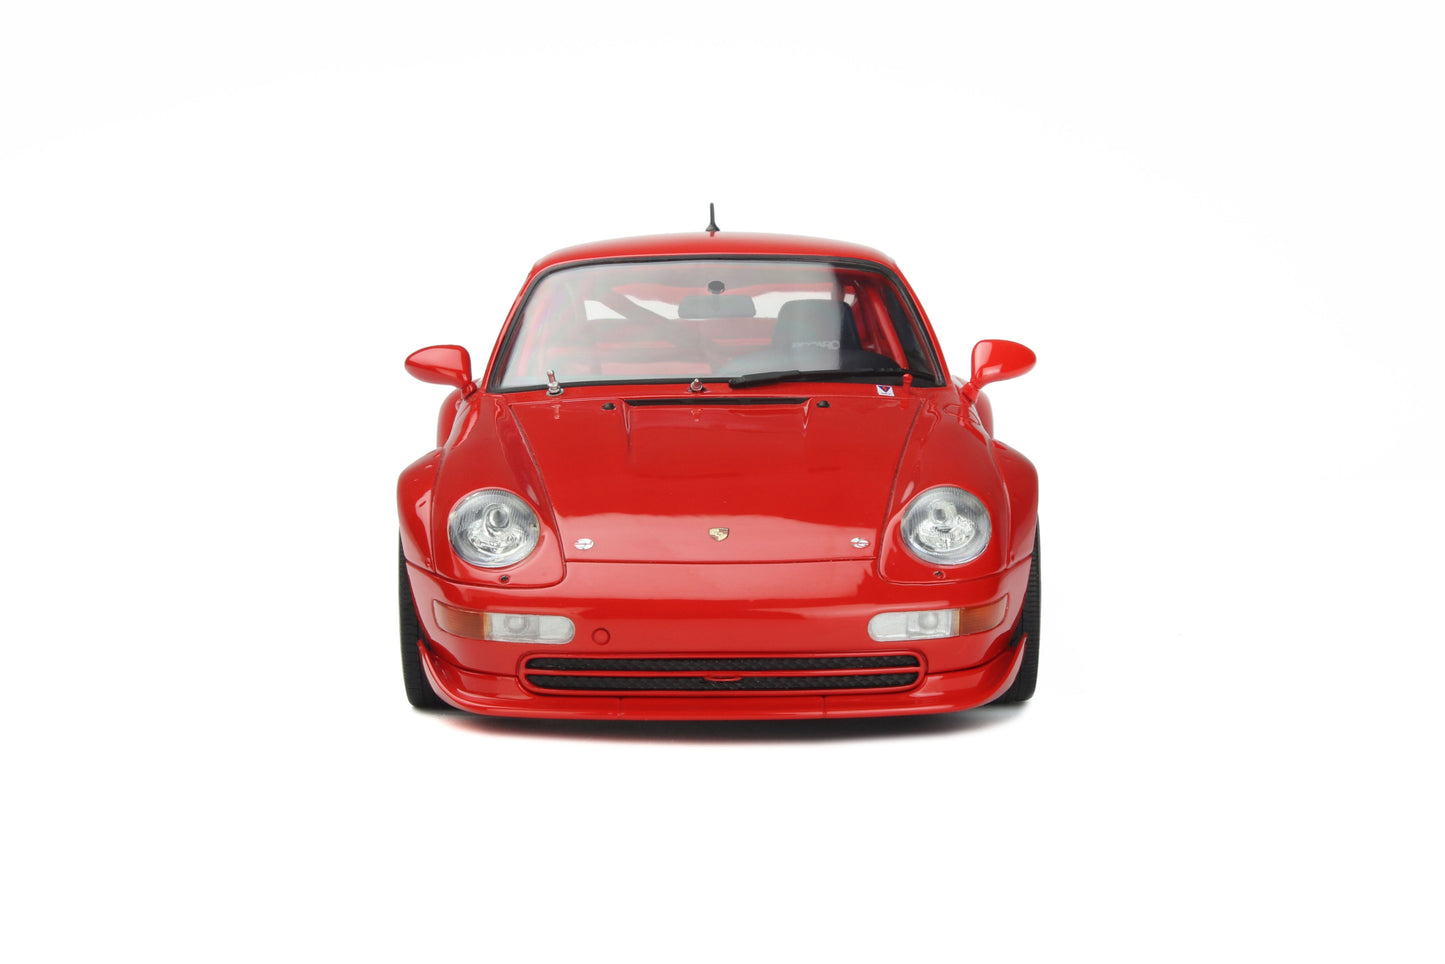 GT Spirit 1:18 1996 Porsche 911 (993) 3.8 RSR Guards Red GT366